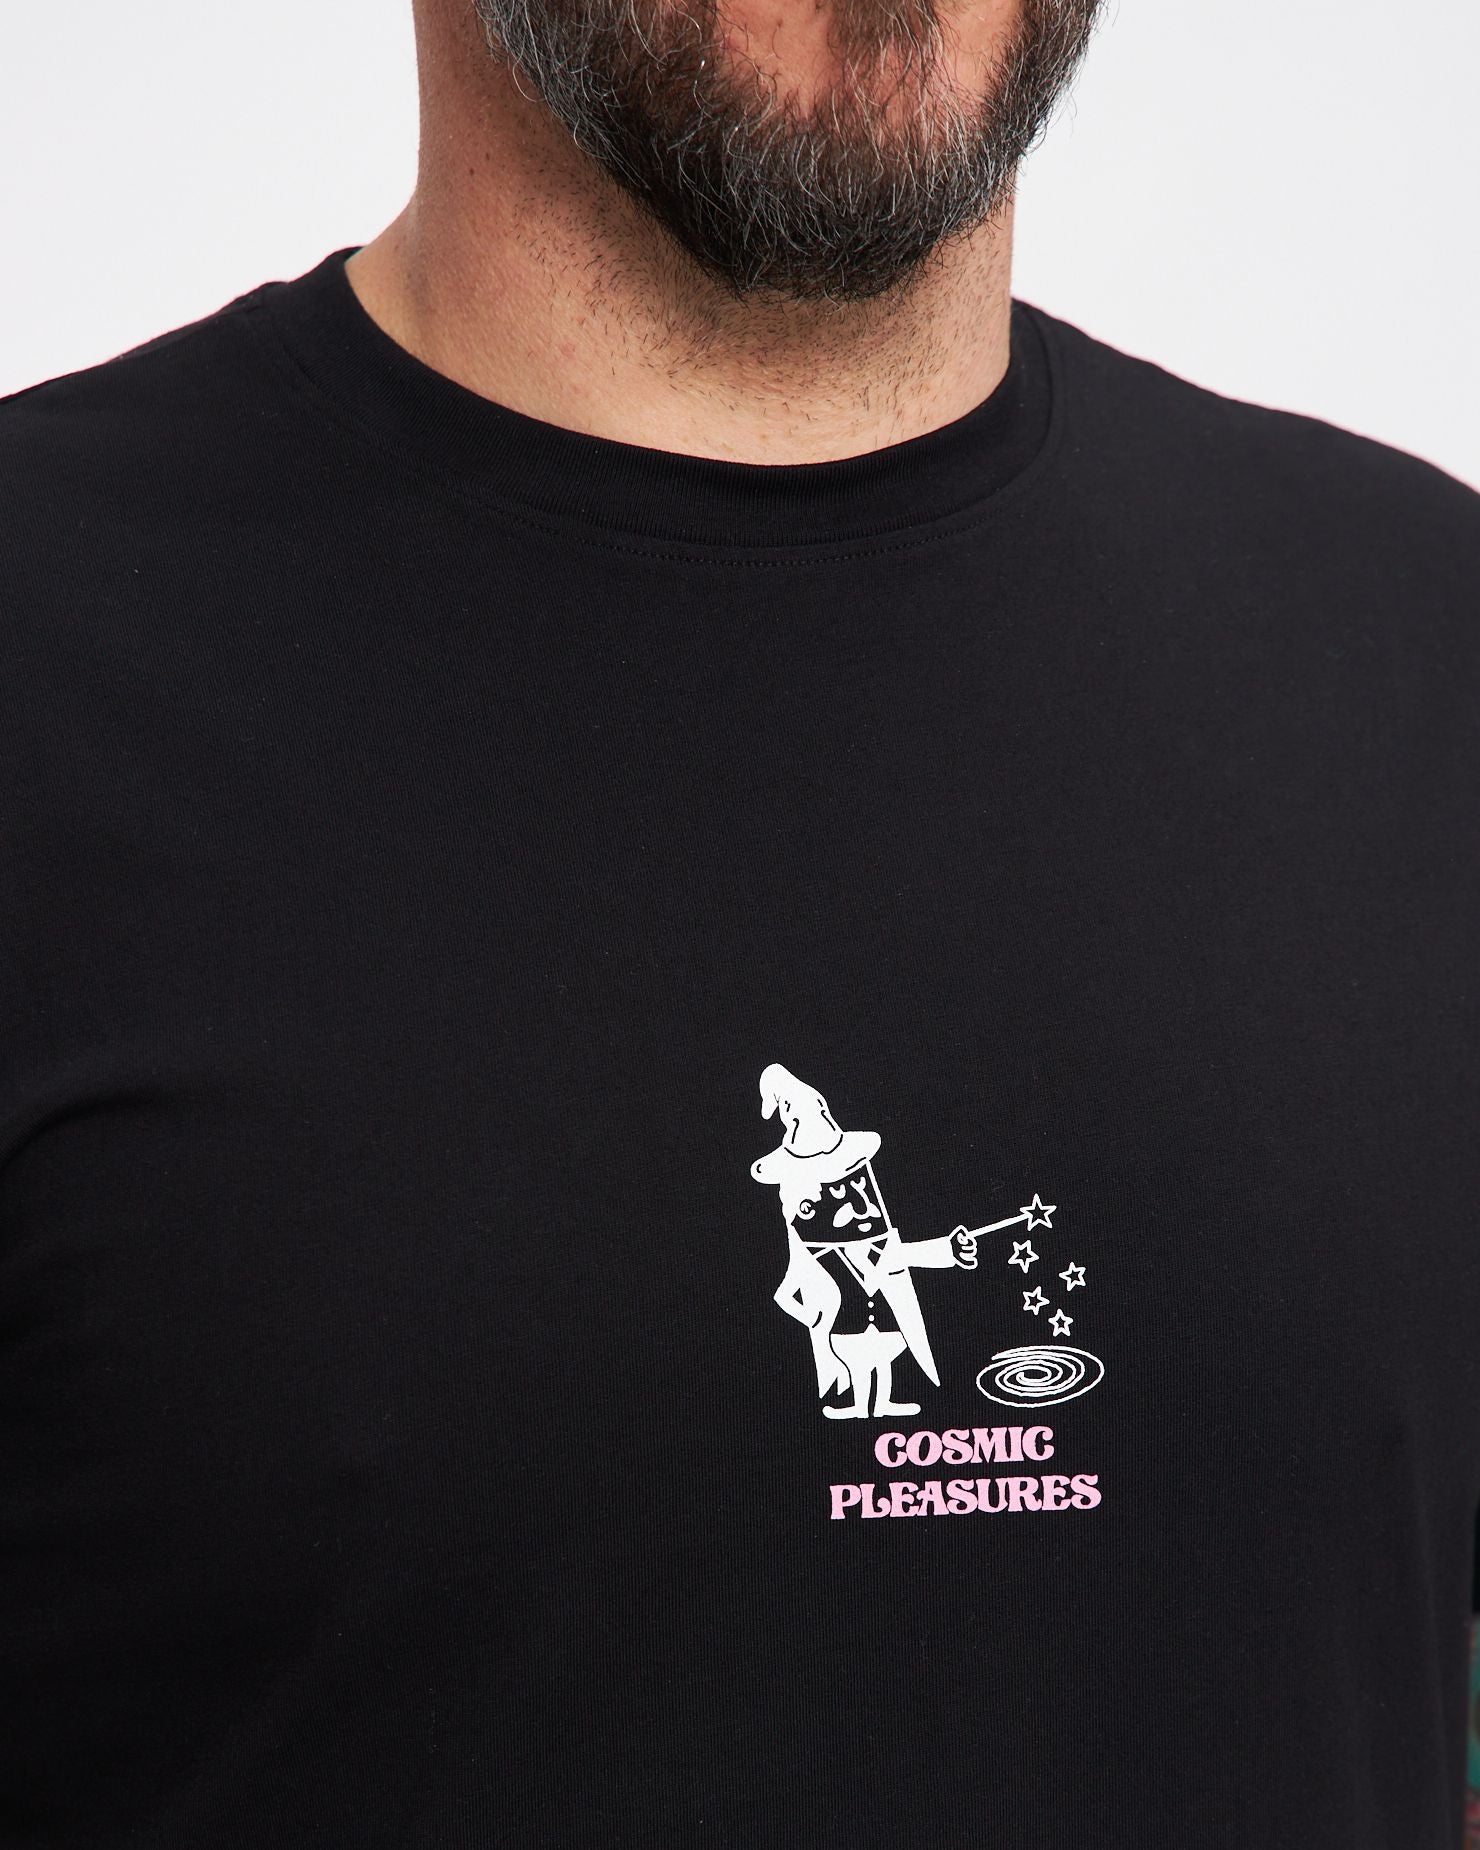 Cosmic Pleasures T-Shirt in Plain Black